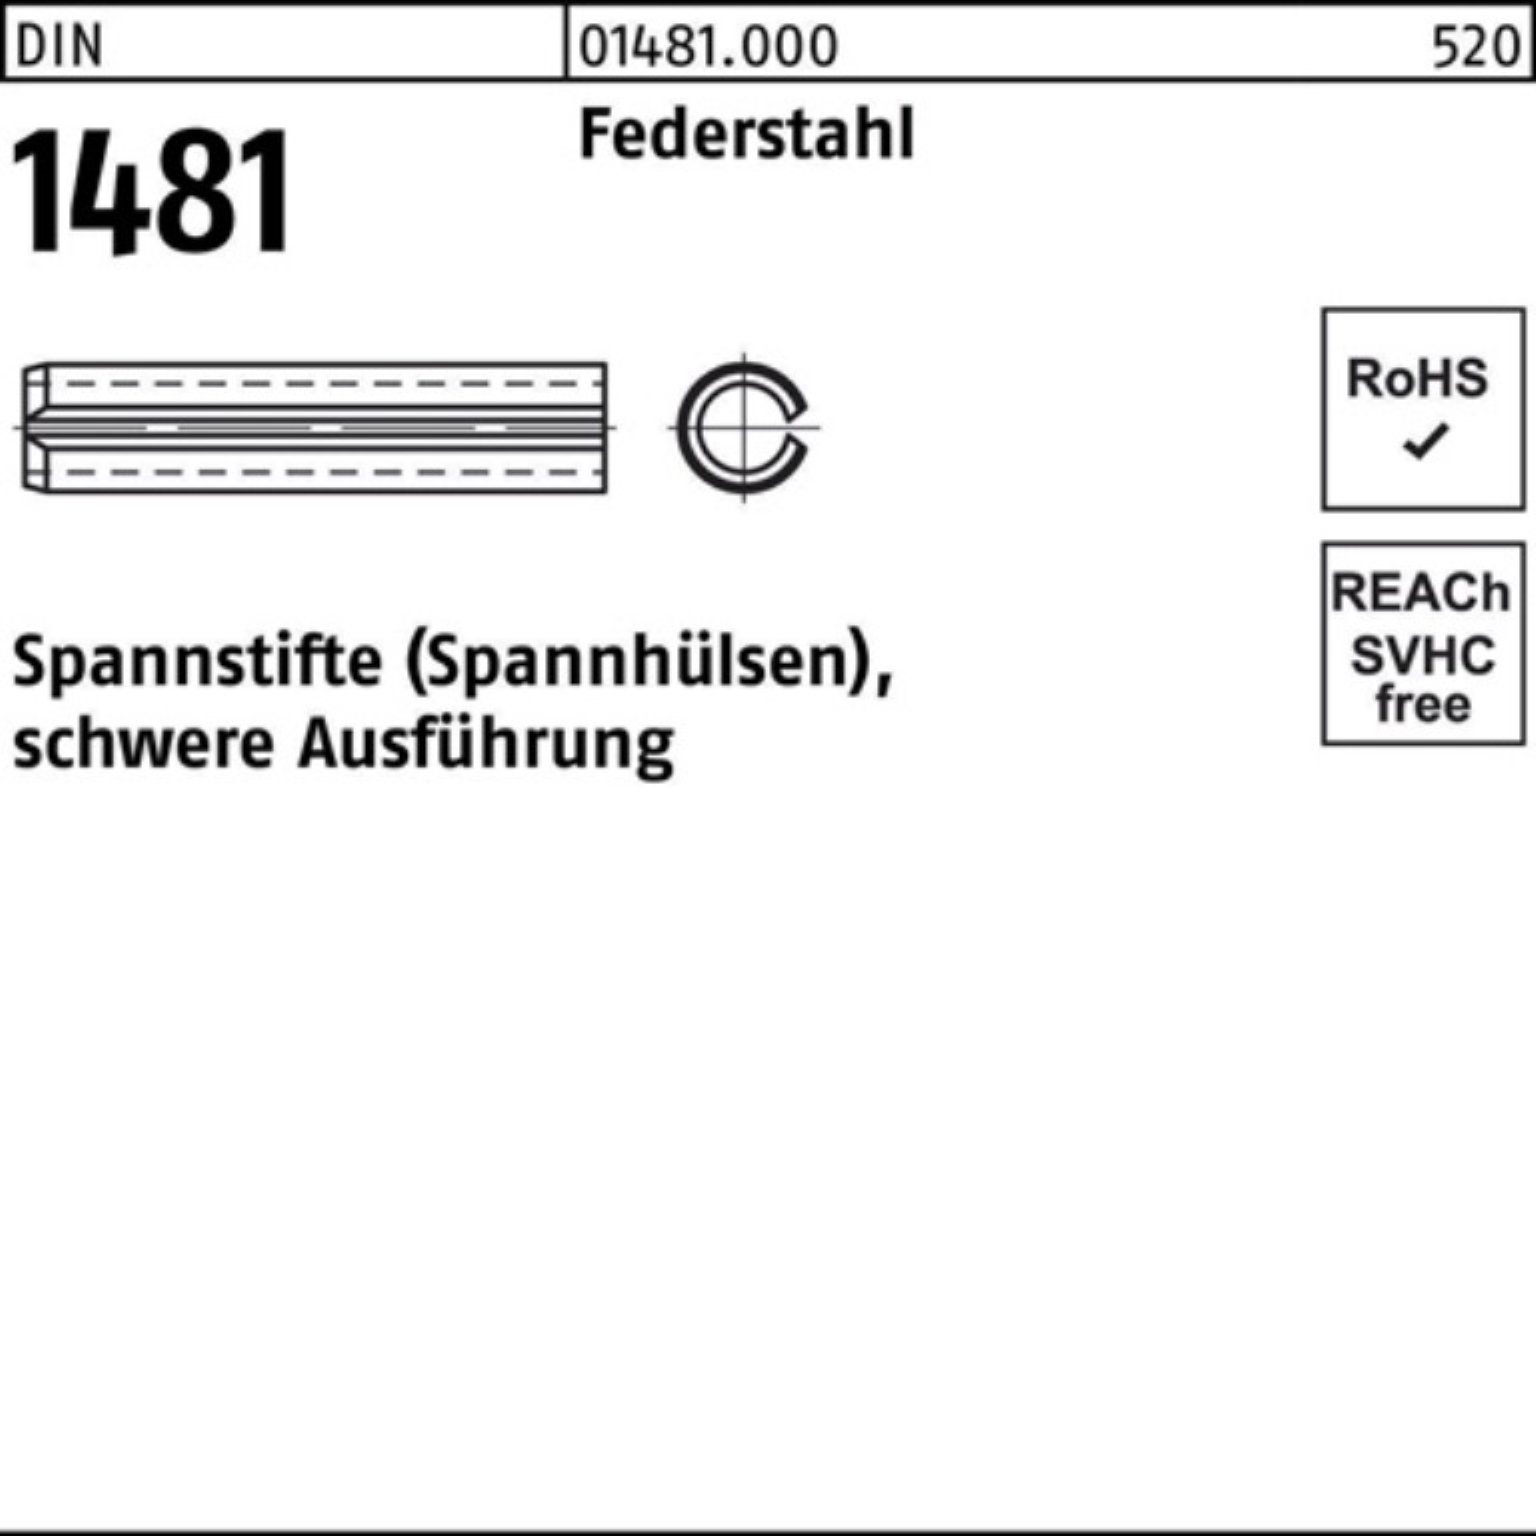 Reyher Spannstift 500er Pack Spannstift DIN 1481 5x 14 Federstahl schwere Ausführung 50